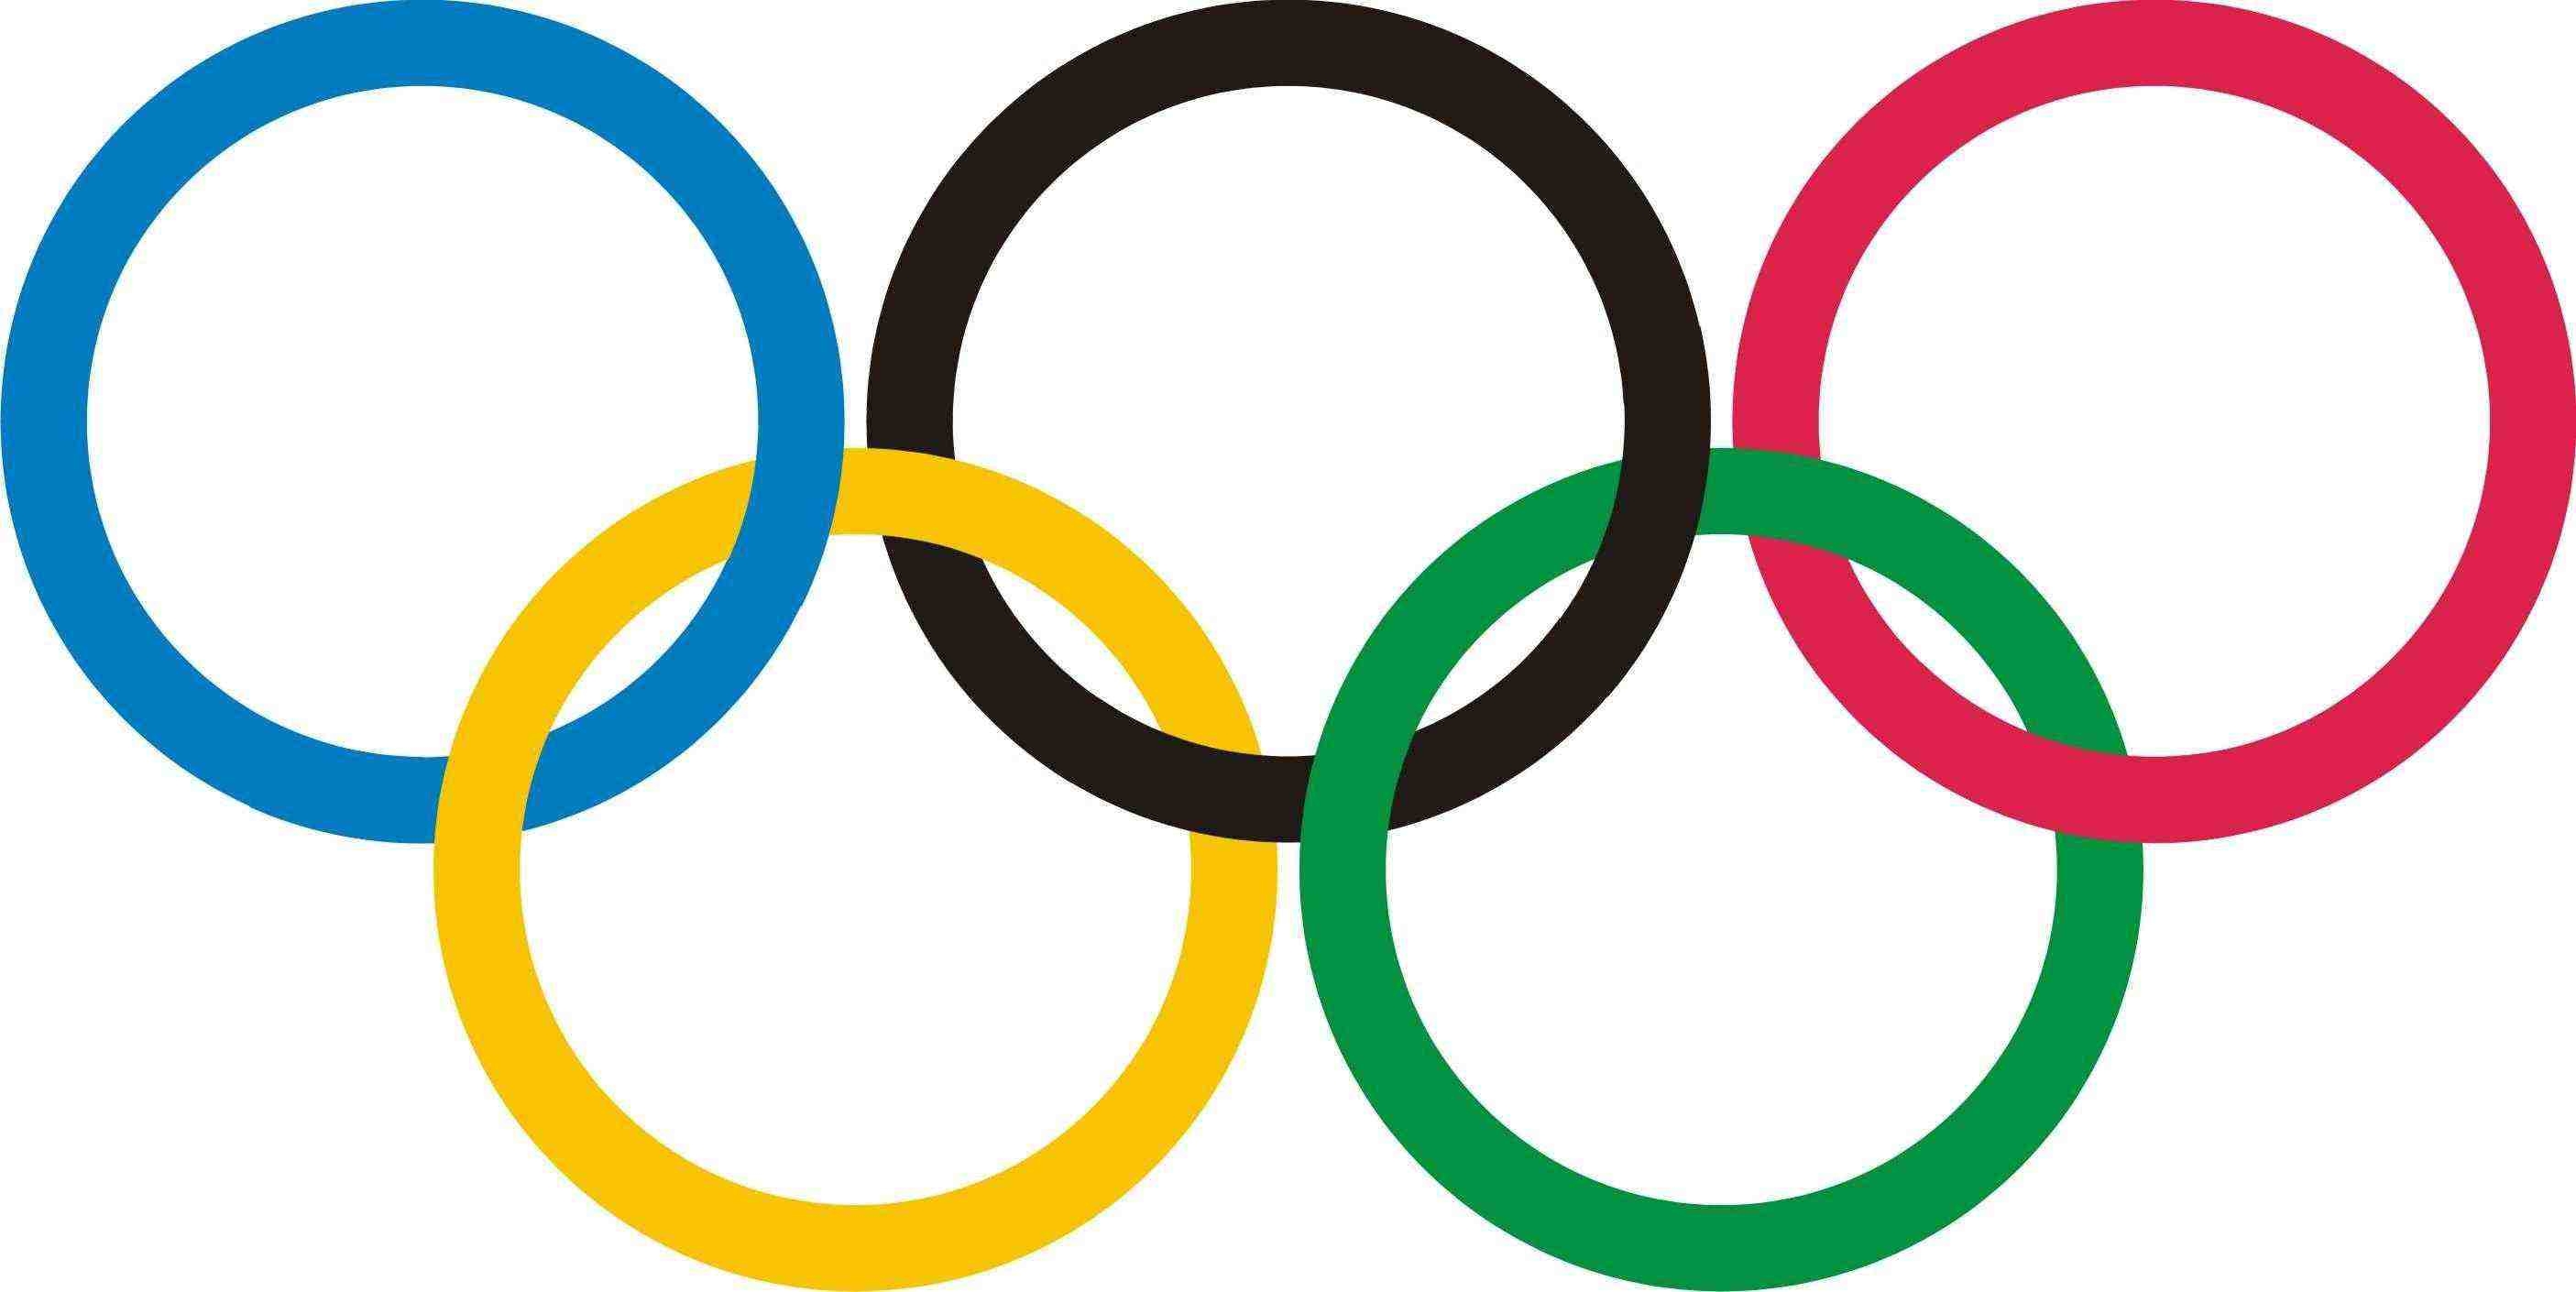 ՌԴ բնակչության 90 տոկոսը դիտել Է Սոչիի Օլիմպիական խաղերի ռեպորտաժները